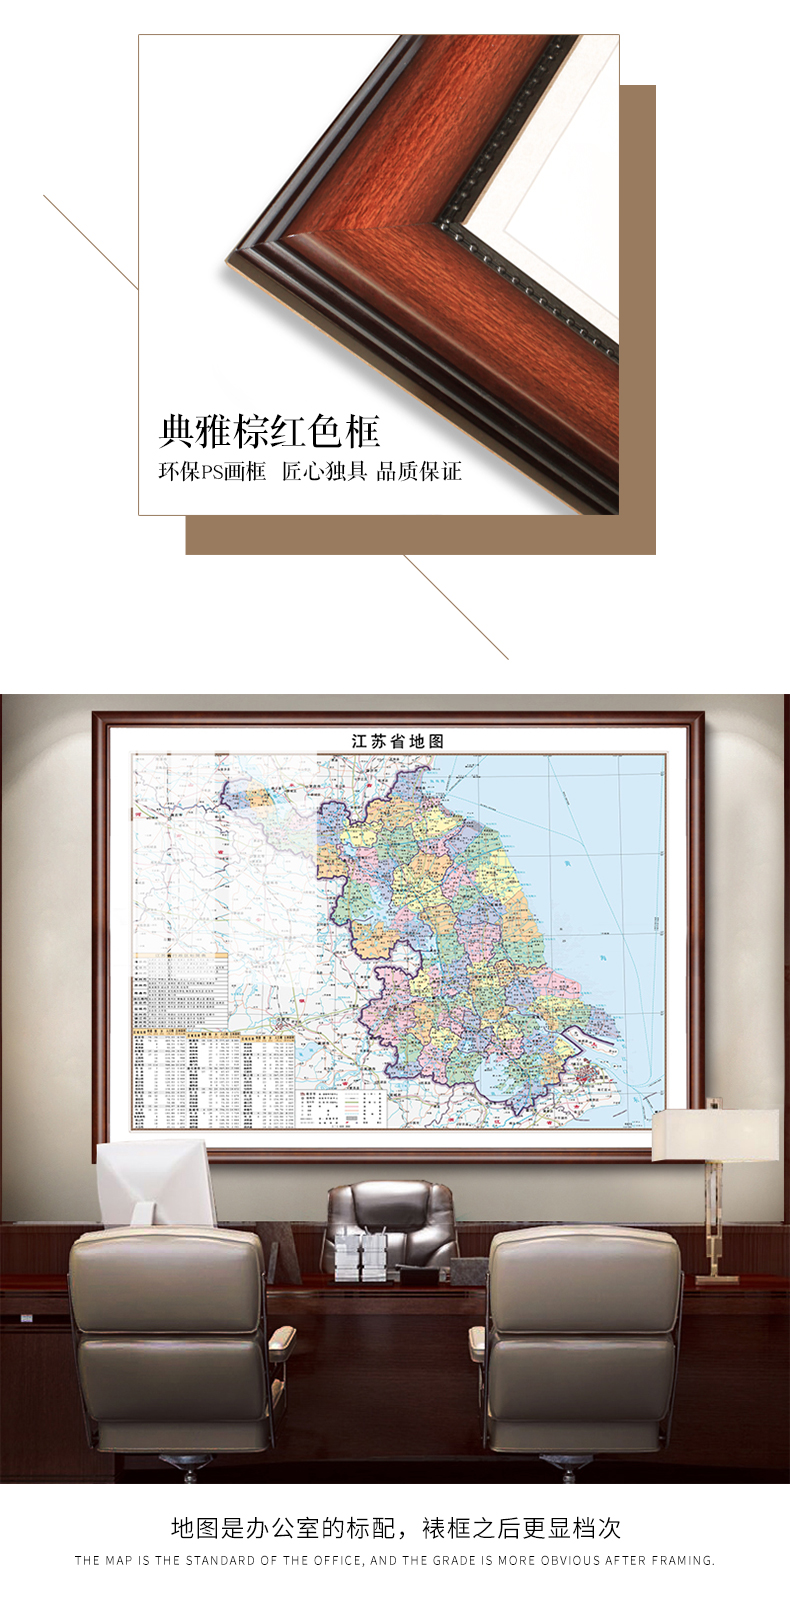 中国地图 典雅红褐色【实木框】 115*200cm加宽版,不喜勿拍